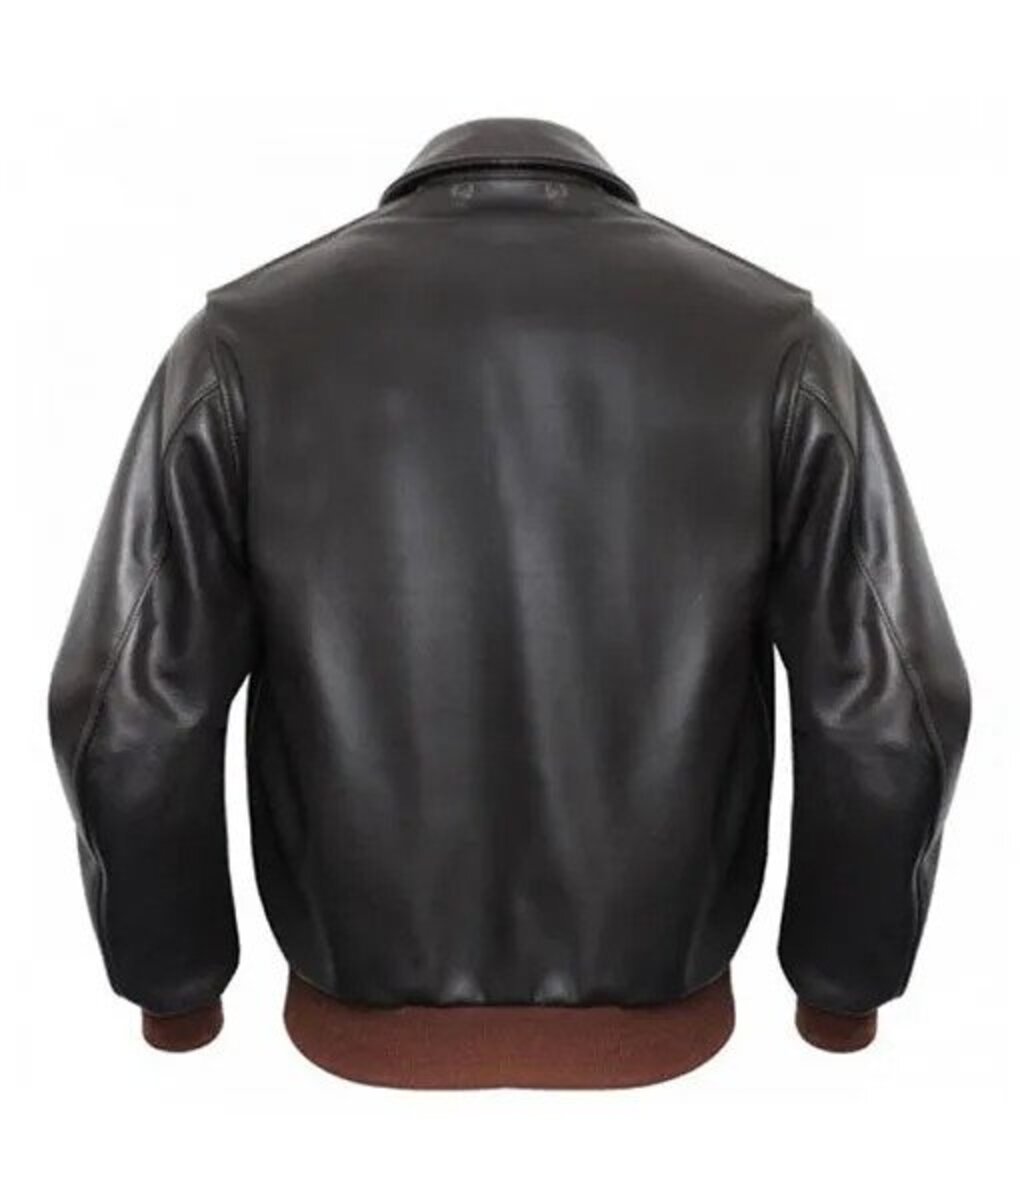 King Leather Jacket